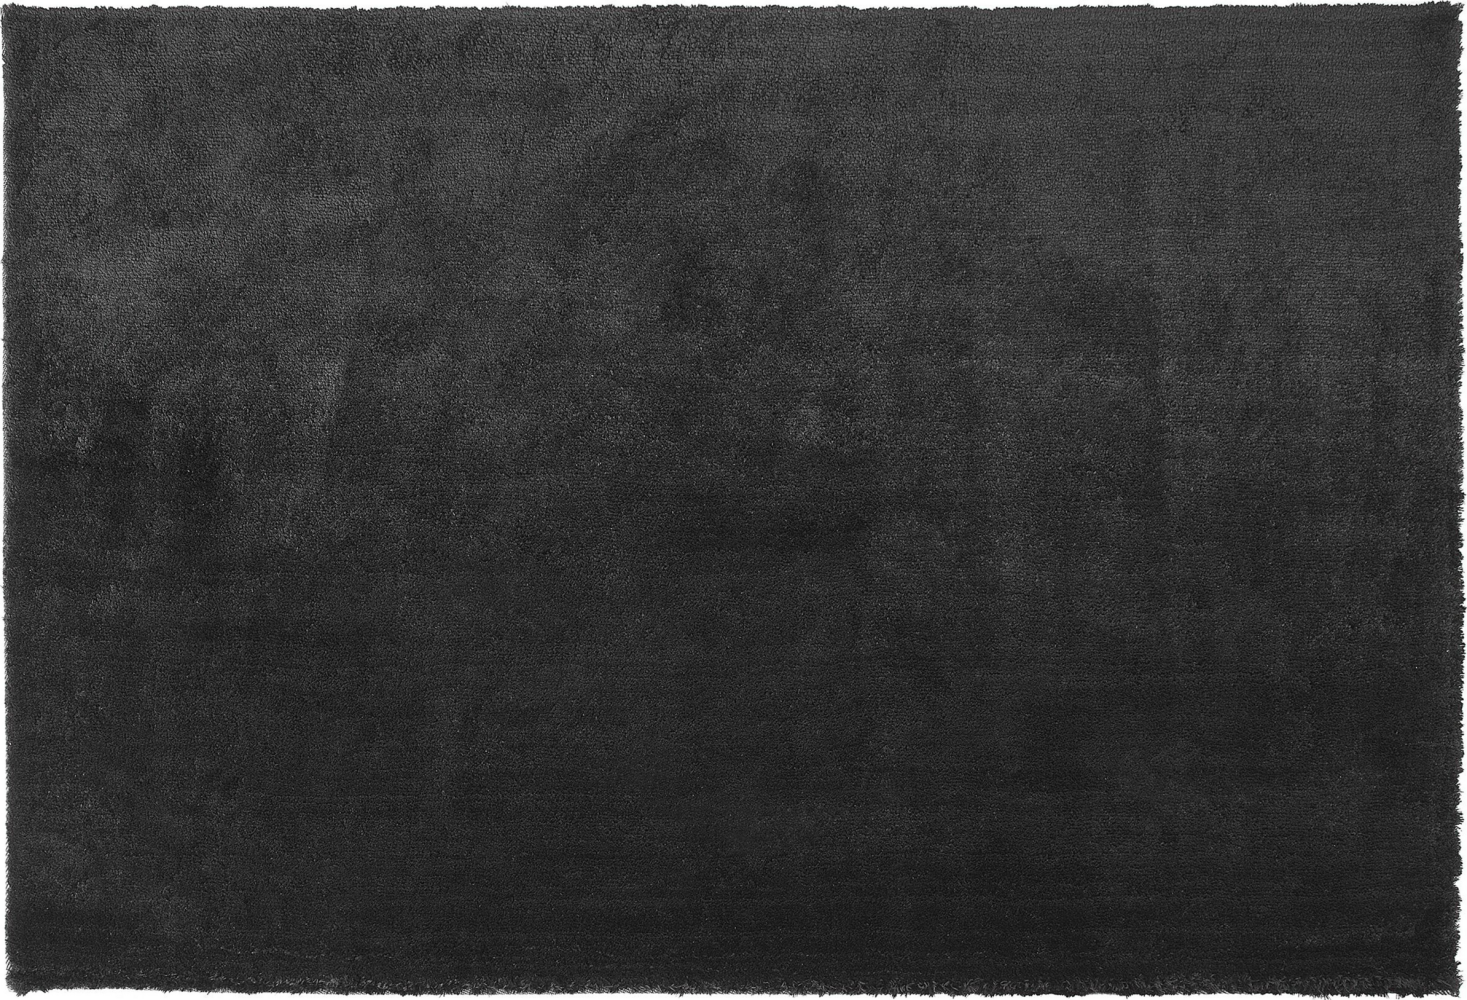 Teppich schwarz 140 x 200 cm Shaggy EVREN Bild 1